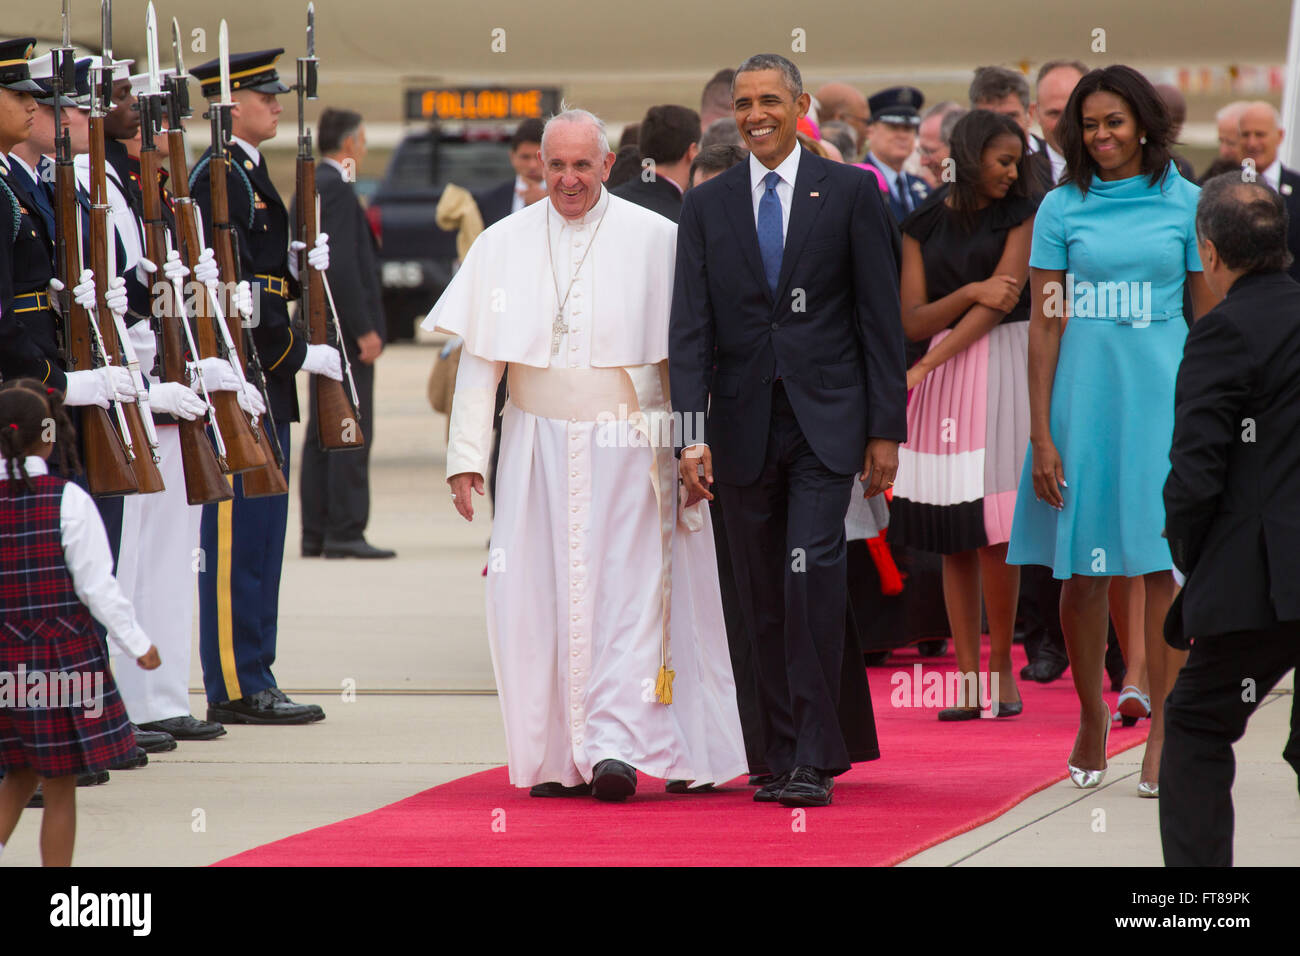 Il Papa arriva a base comune Andrews vicino a Washington D.C. e passeggiate il tappeto rosso il presidente Obama come egli inizia il suo tour di tre città negli Stati Uniti. Foto di James Tourtellotte. Foto Stock